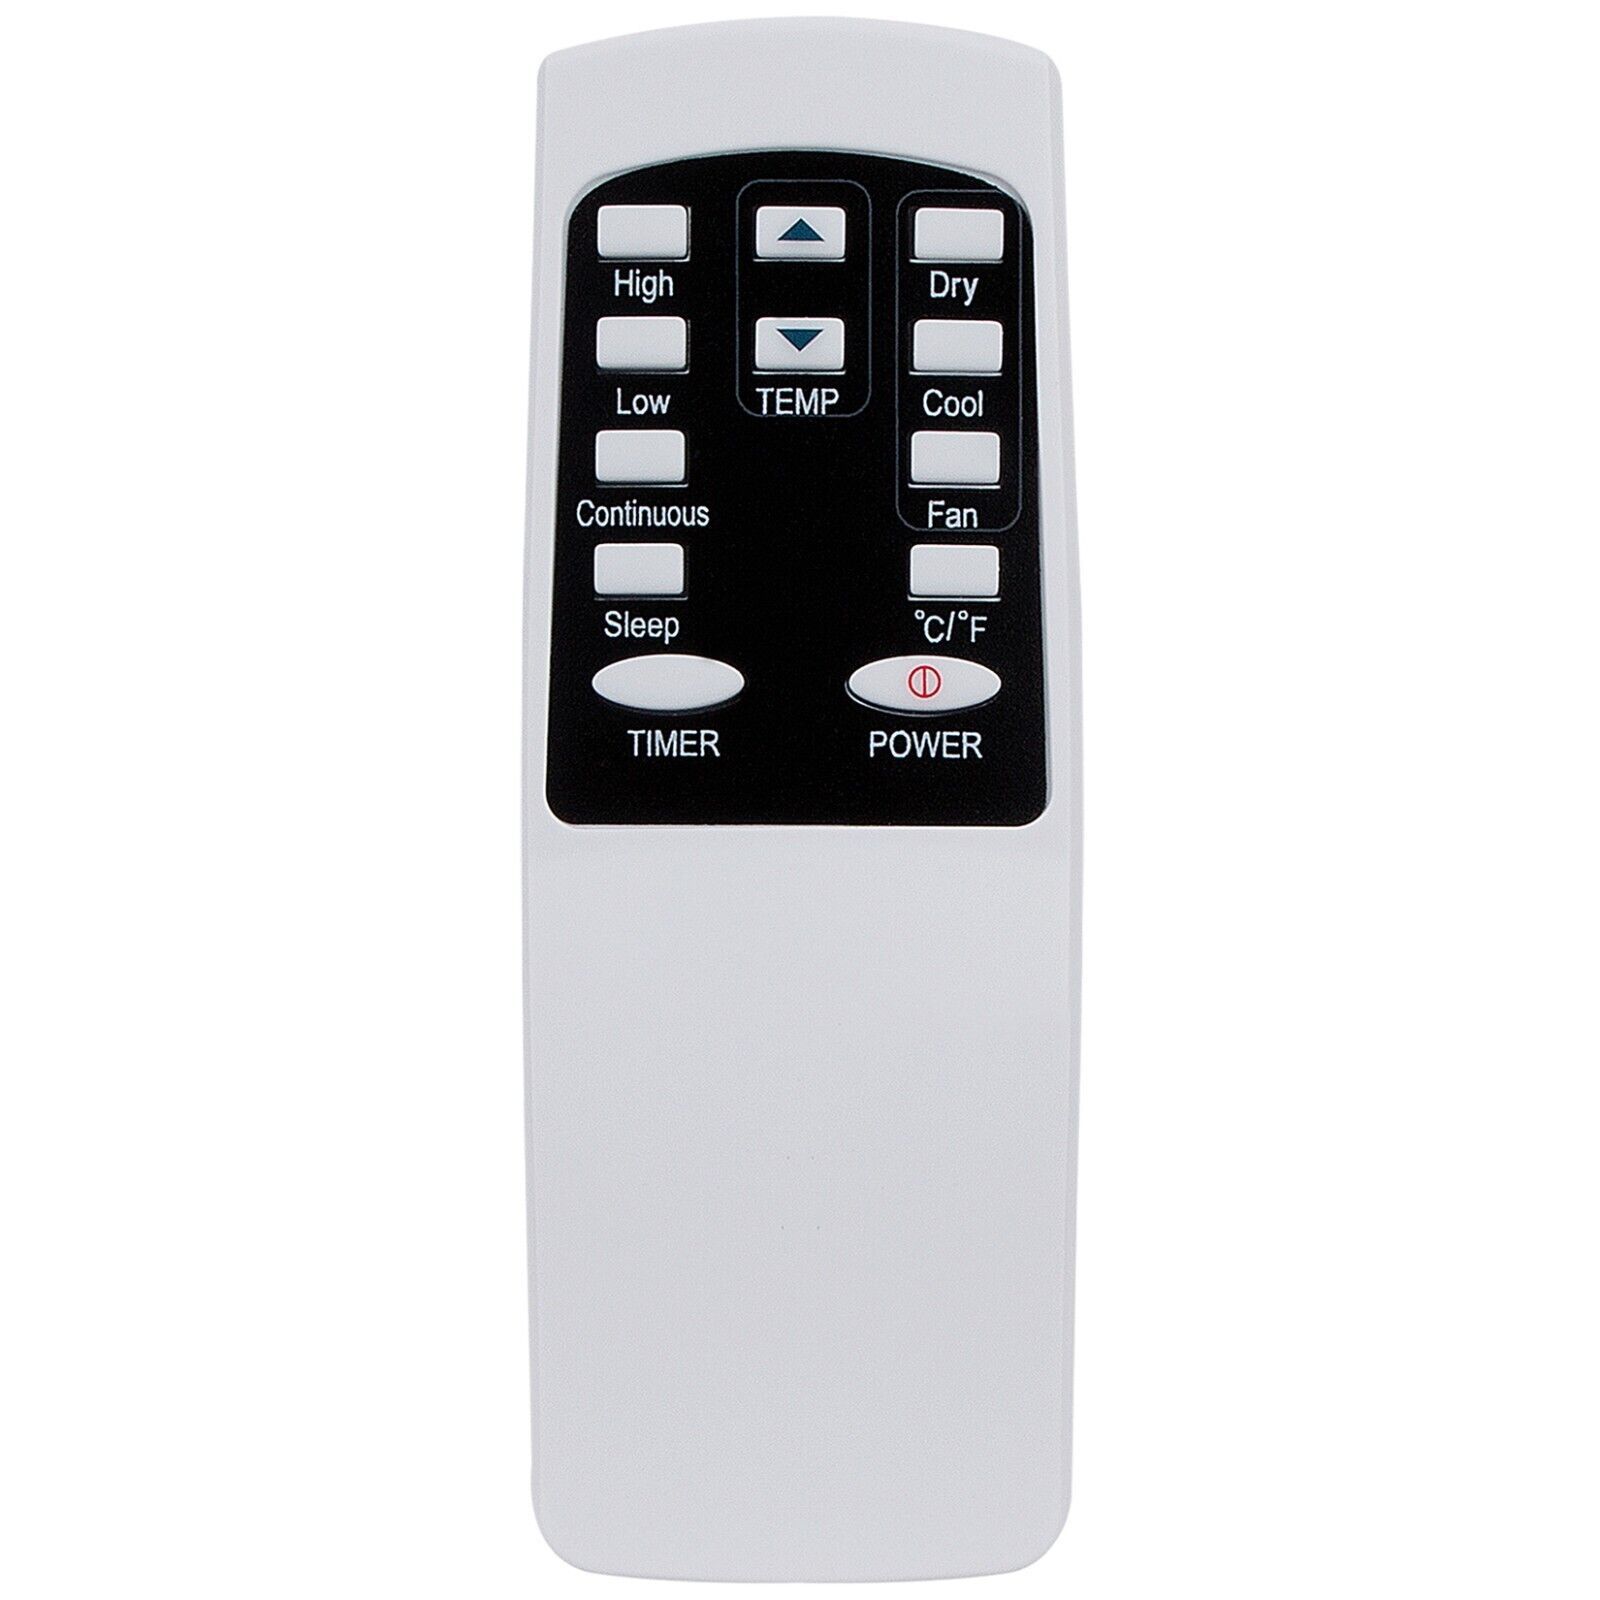 Cov30332908 Replace Remote For Lg Air Conditioner Lp1013Wnr Lp0910Wnr Lp1015Wnr - $23.76